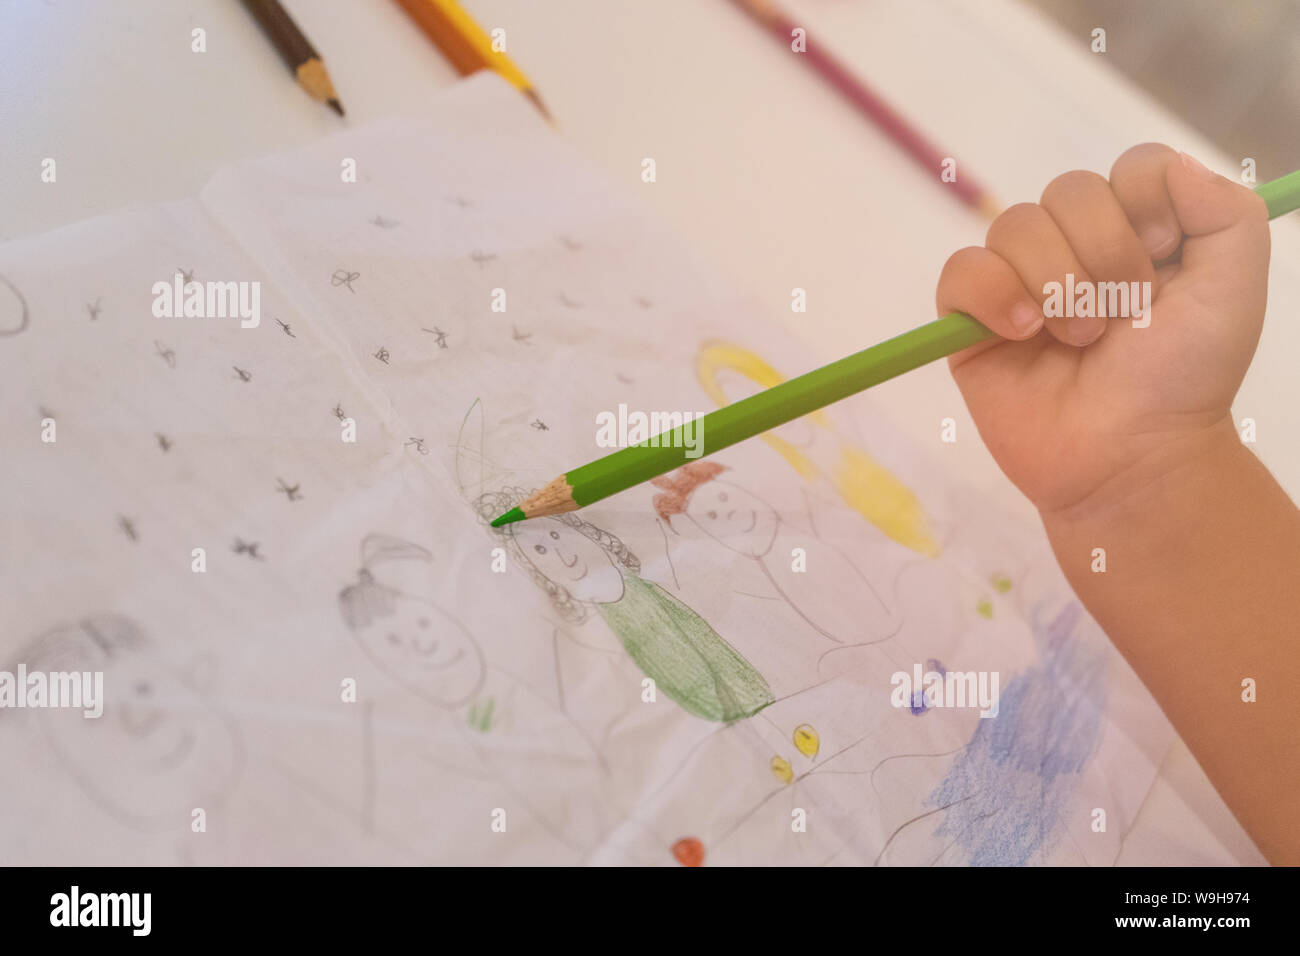 Piccola mano la colorazione di un disegno realizzato a mano con una matita verde. concetto di sviluppo di capacità artistiche nei bambini Foto Stock